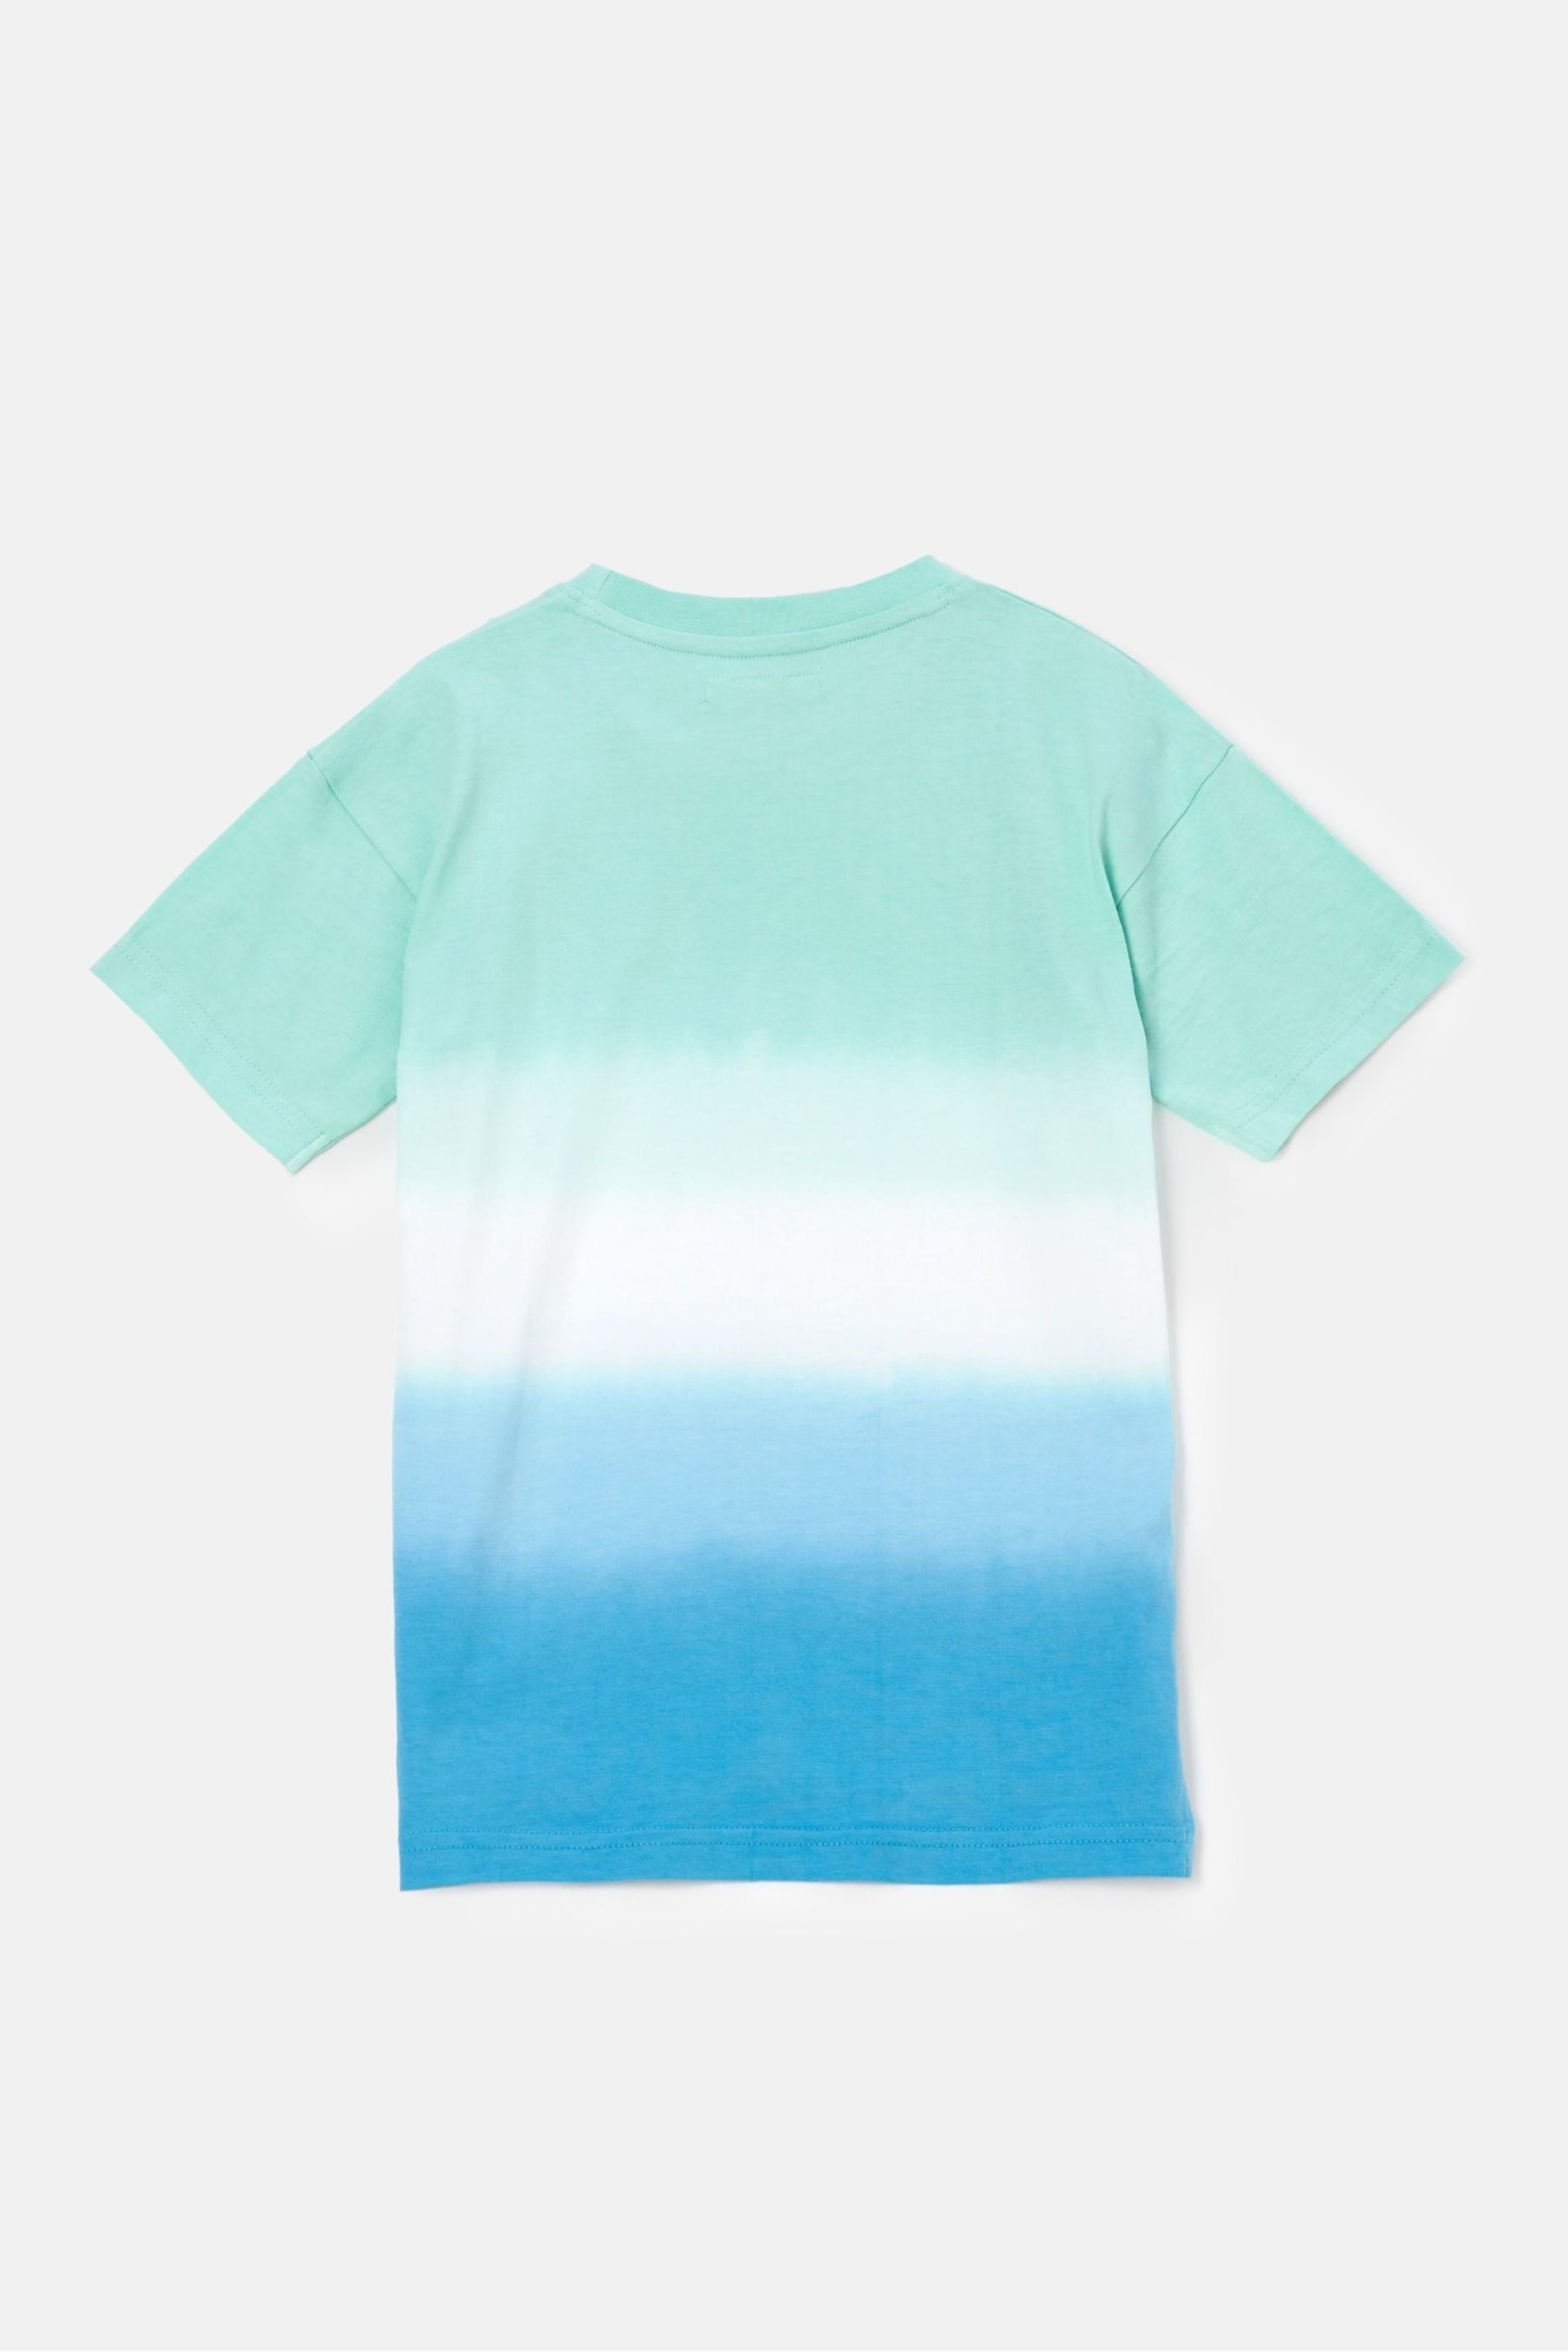 Angel & Rocket Blue Brad Ombre Tie Dye T-Shirt - Image 4 of 5